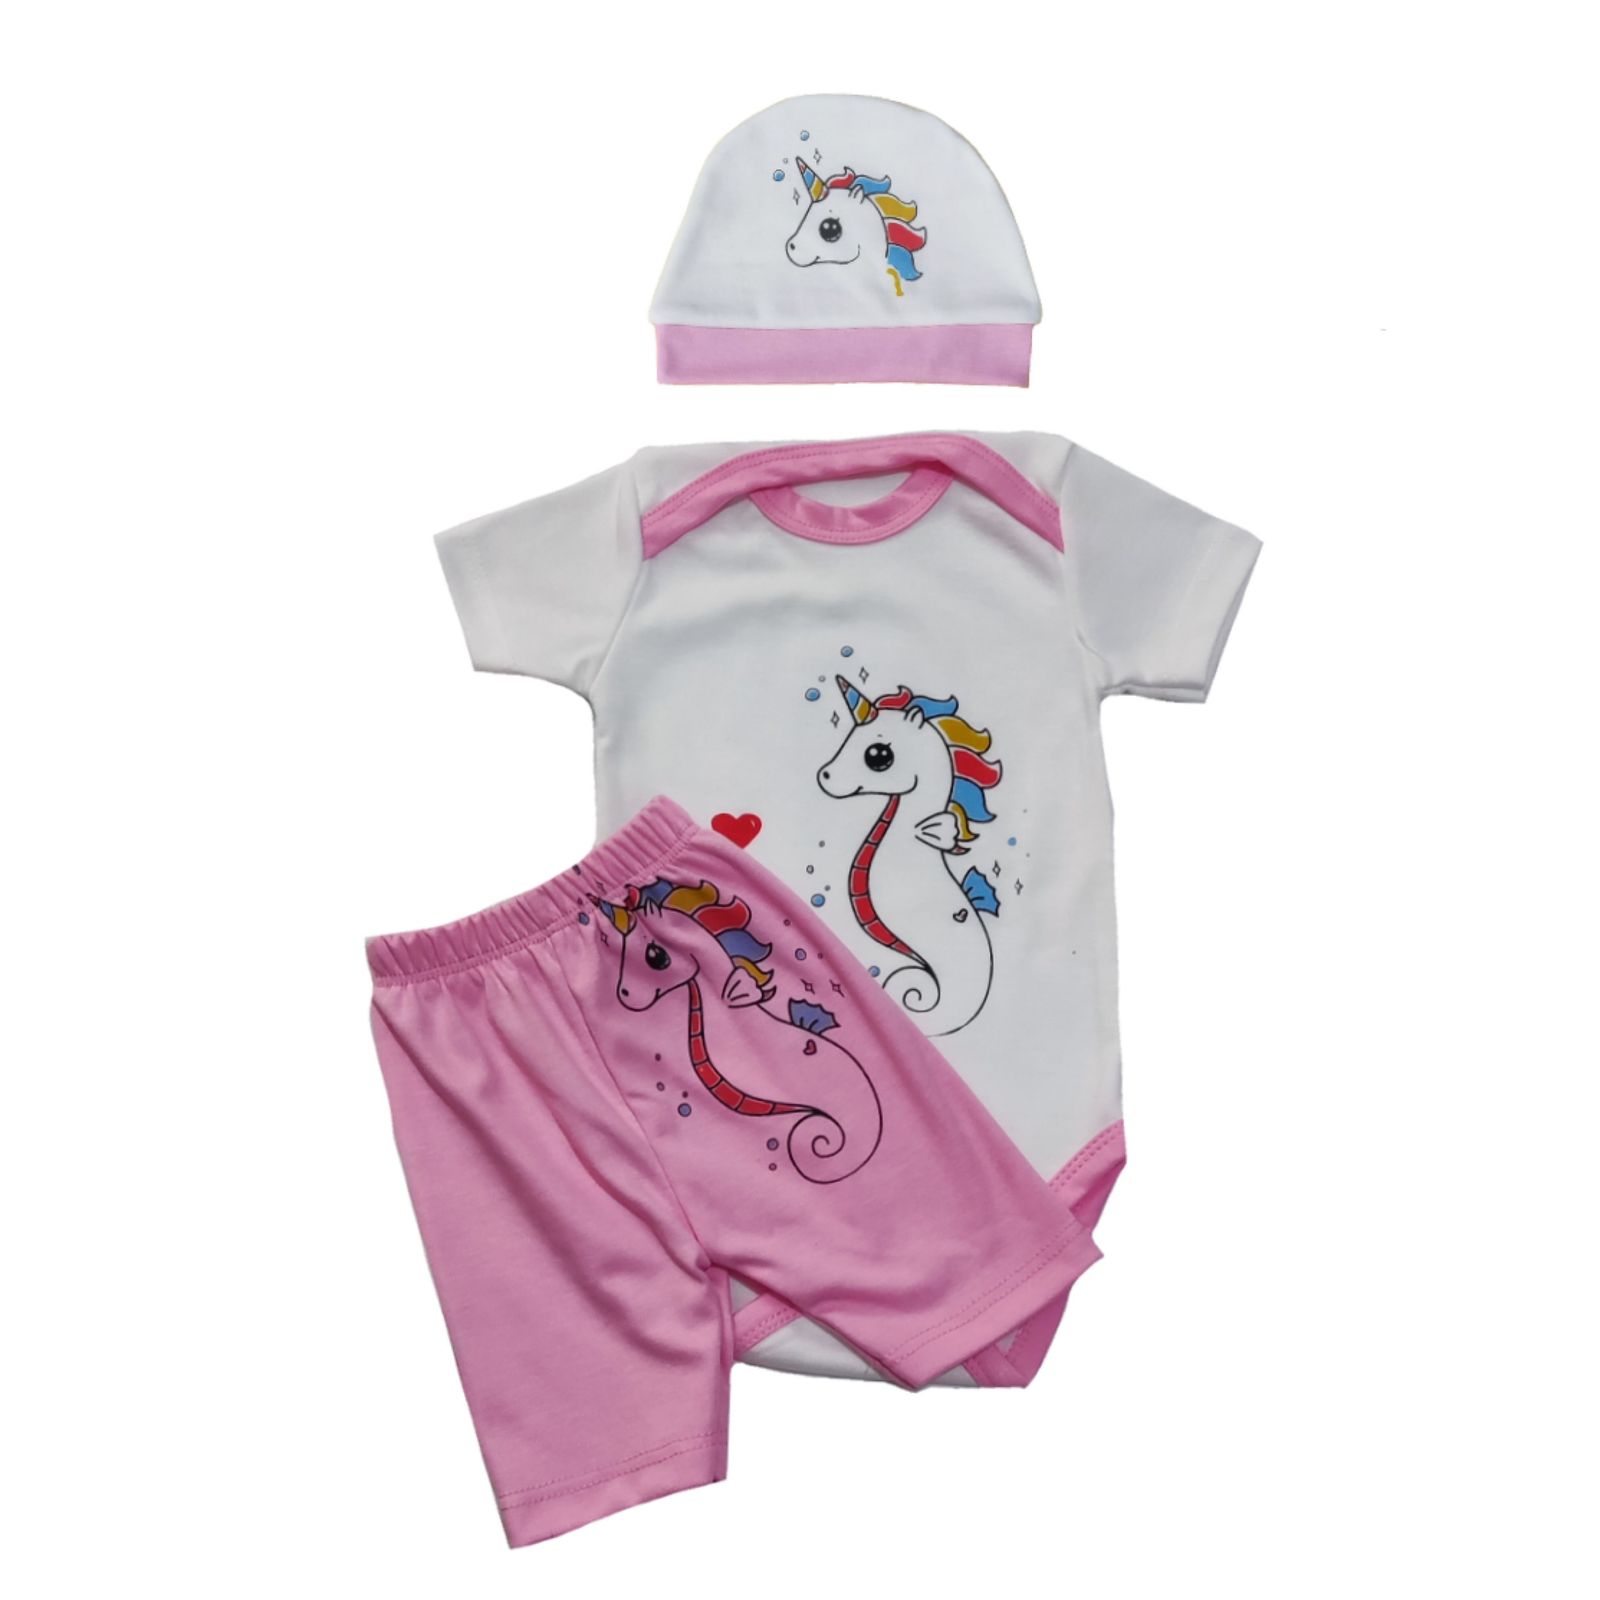 ست 3 تکه لباس نوزادی سرینیکو مدل Unicorn کد B03 -  - 4